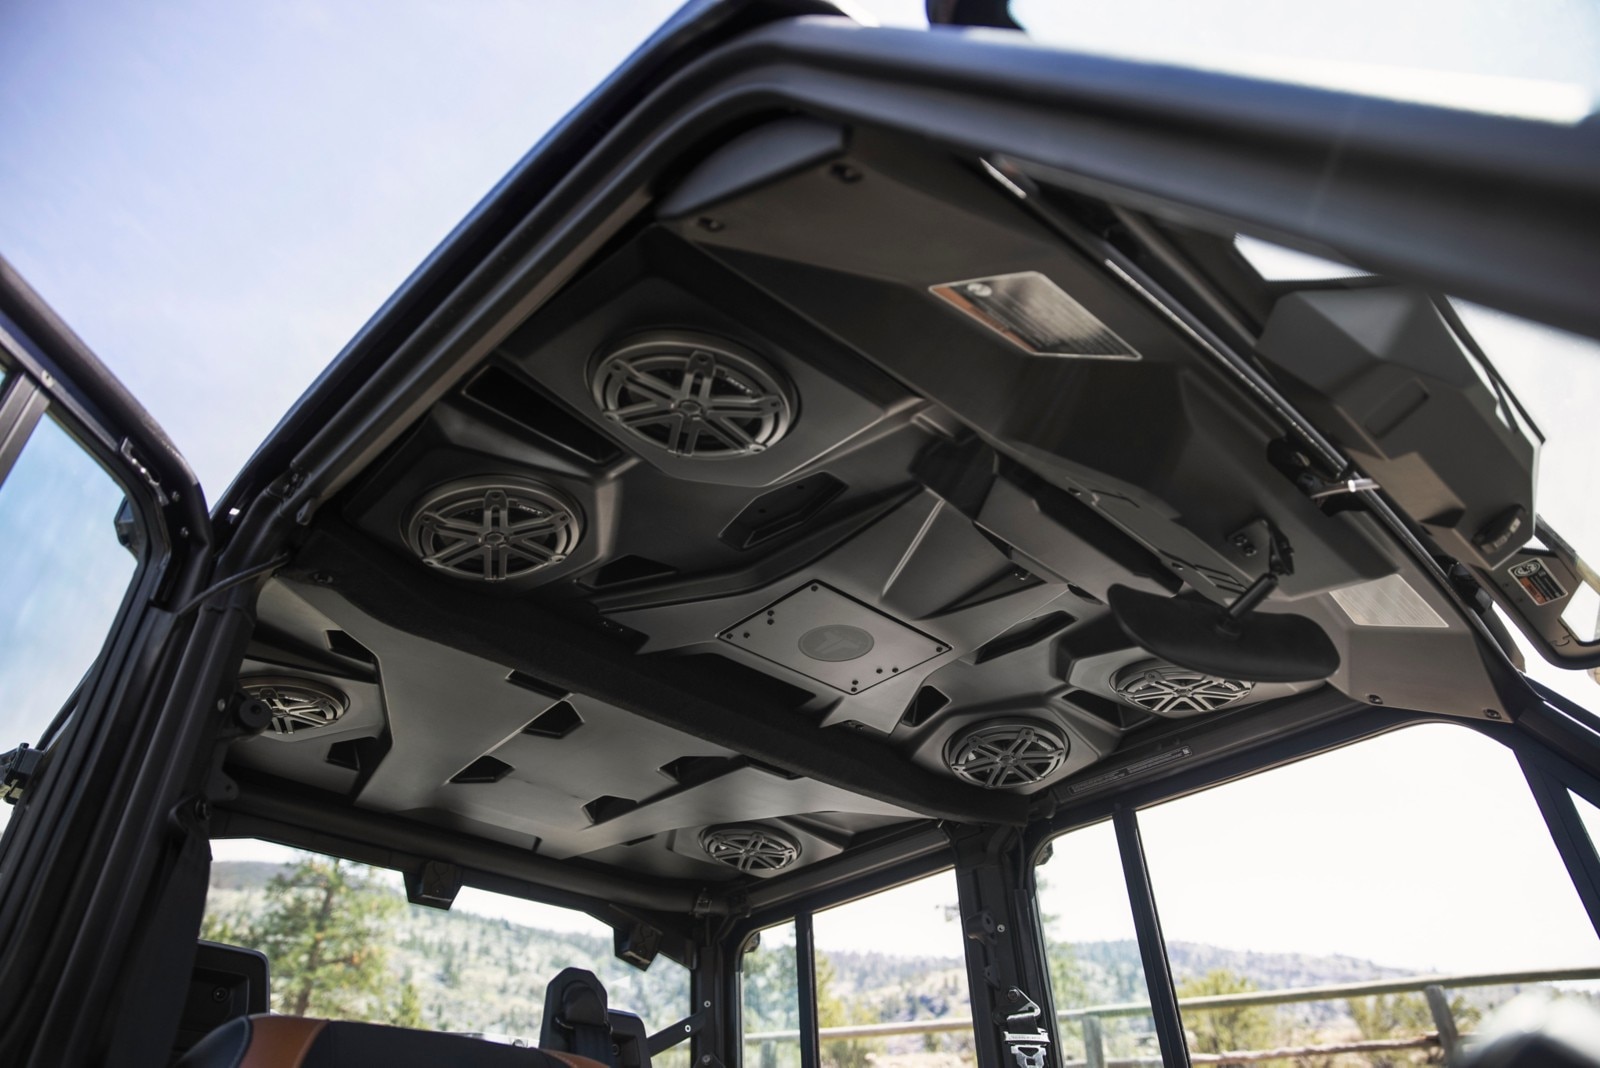 Lone Star CAB modeli üzerinde yeni Can-Am Traxter Ses Sistemi Tavanı, 6 hoparlörü gösteriyor